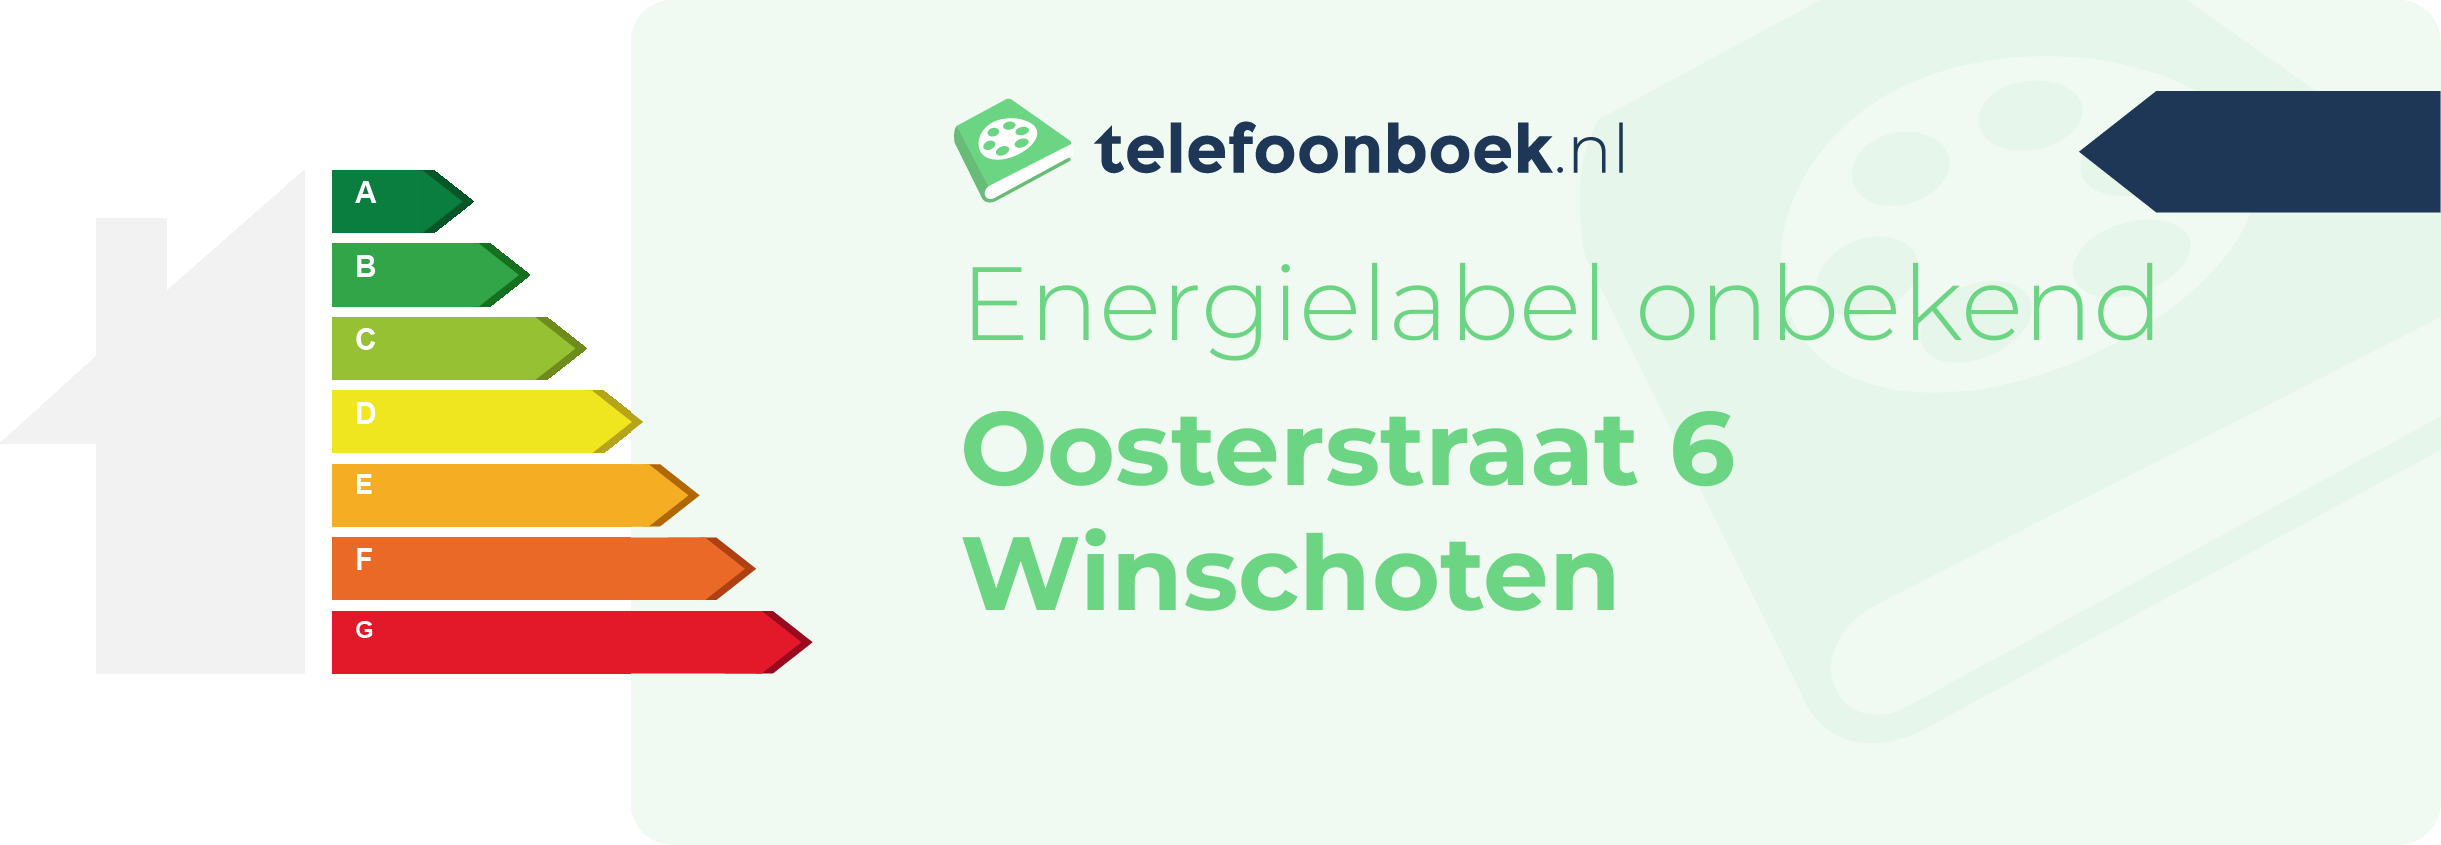 Energielabel Oosterstraat 6 Winschoten